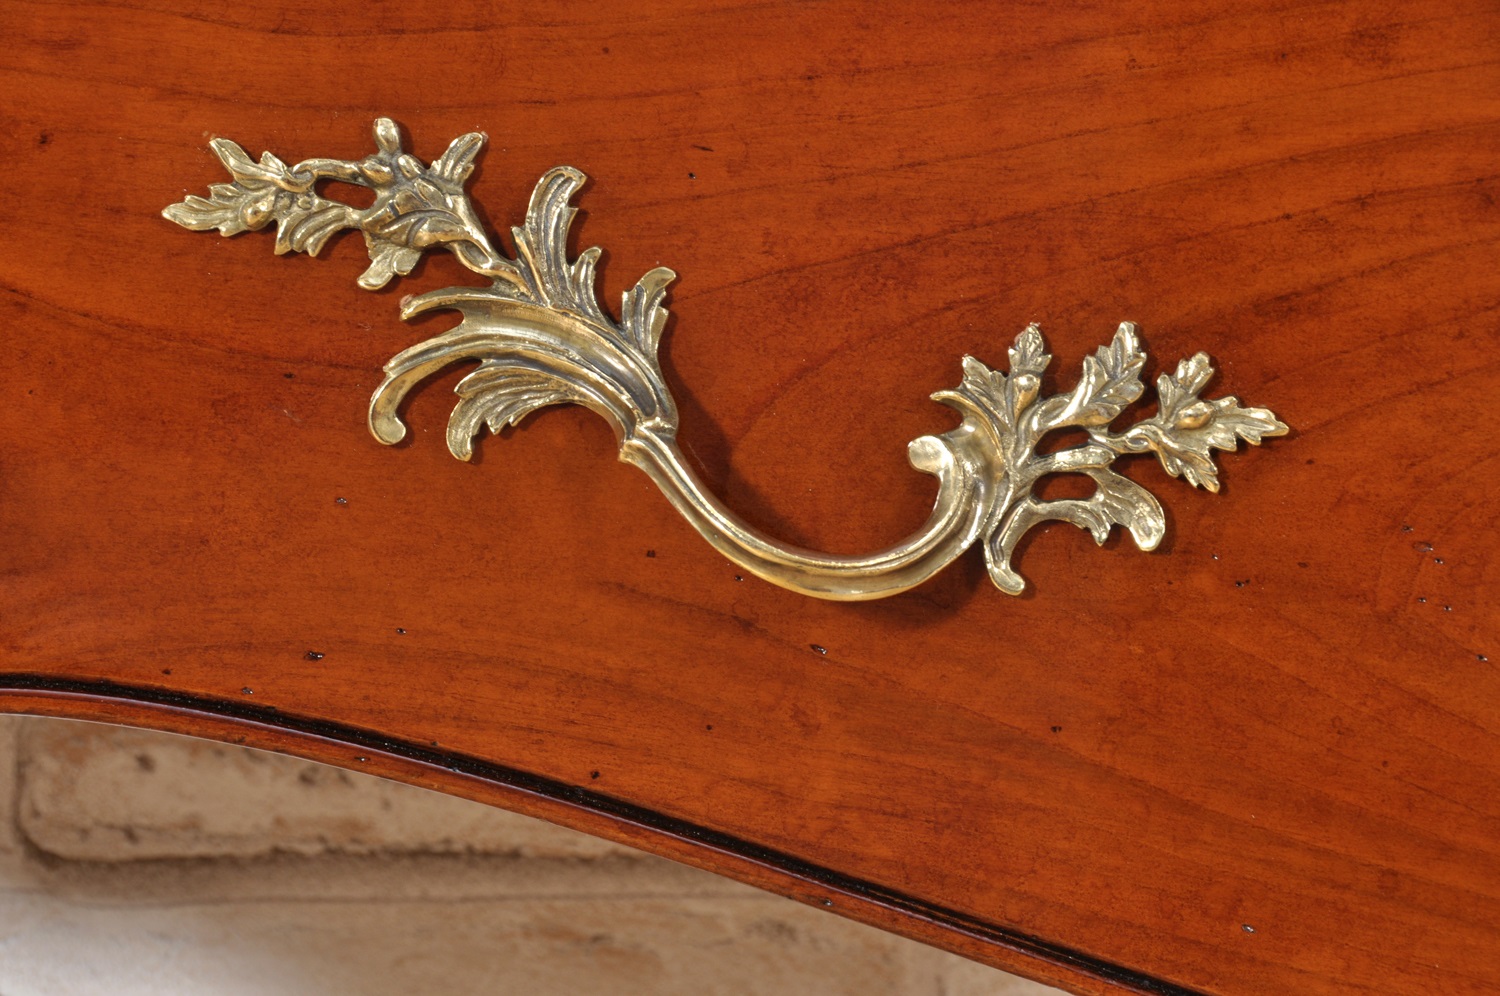 il brand di lusso Vangelista mobili ha costruito la maniglia cesellata in fusione di bronzo nello stile classico Luigi XV veneziano